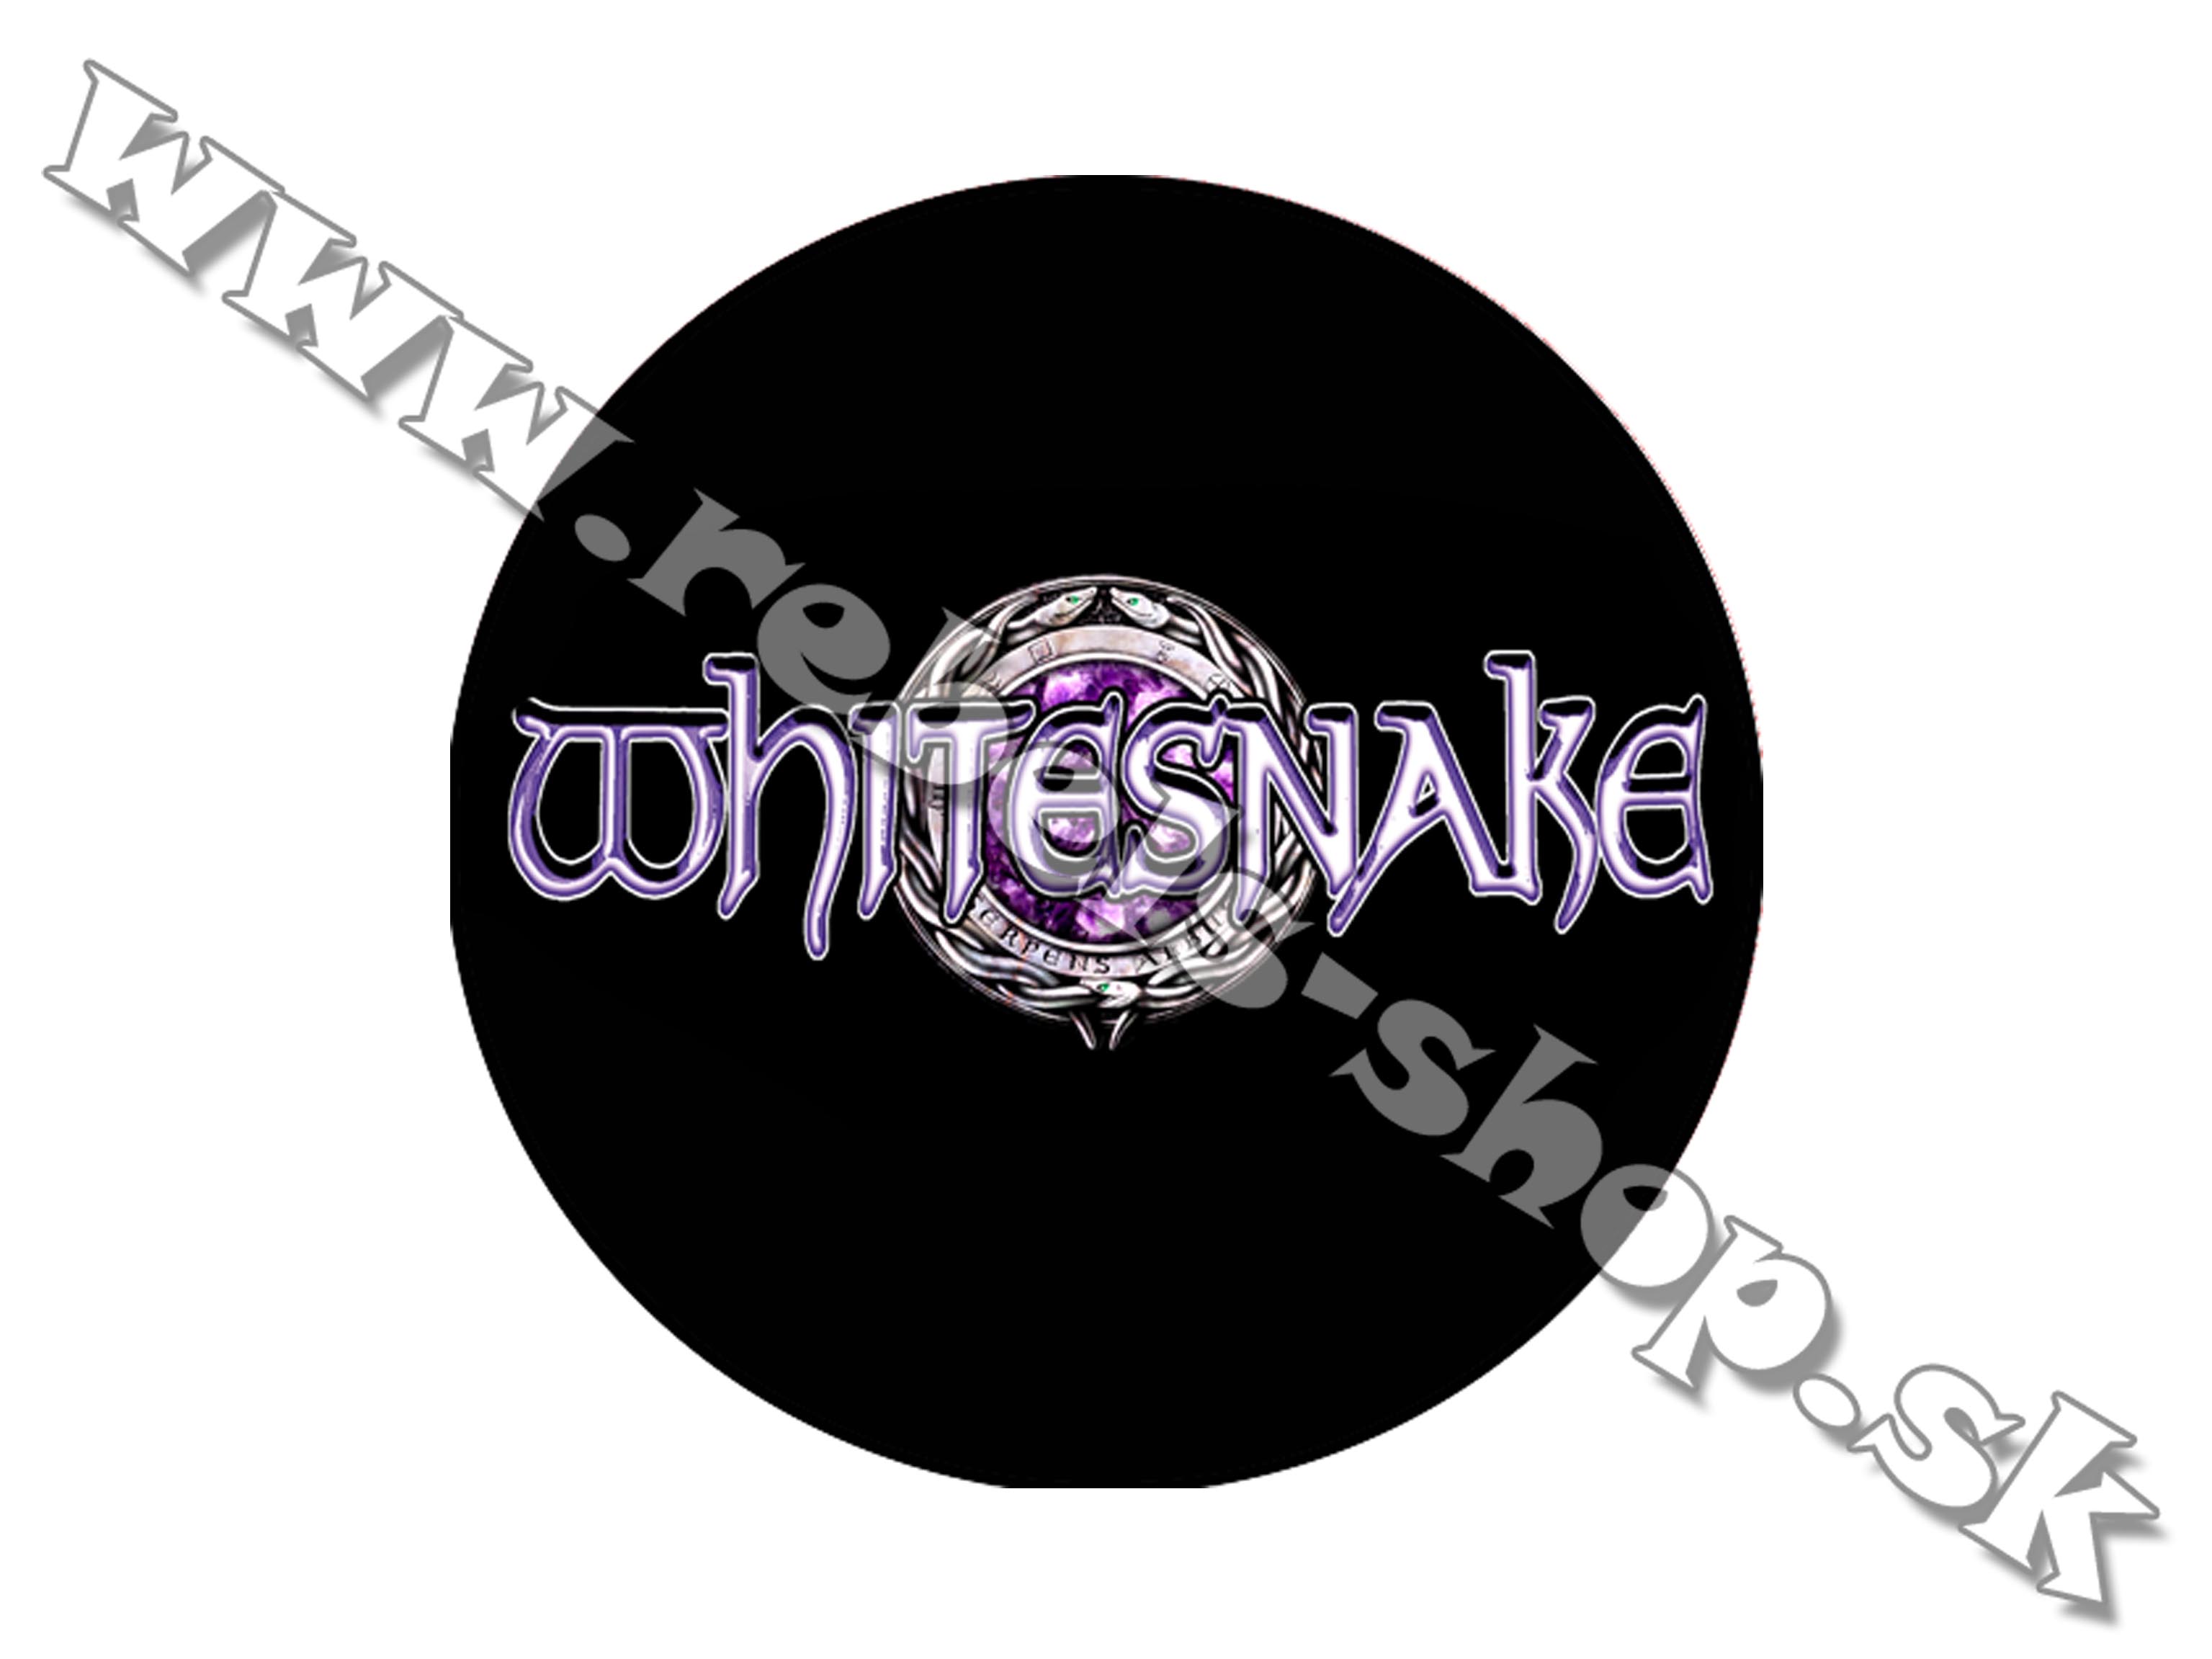 Odznak "Whitesnake"